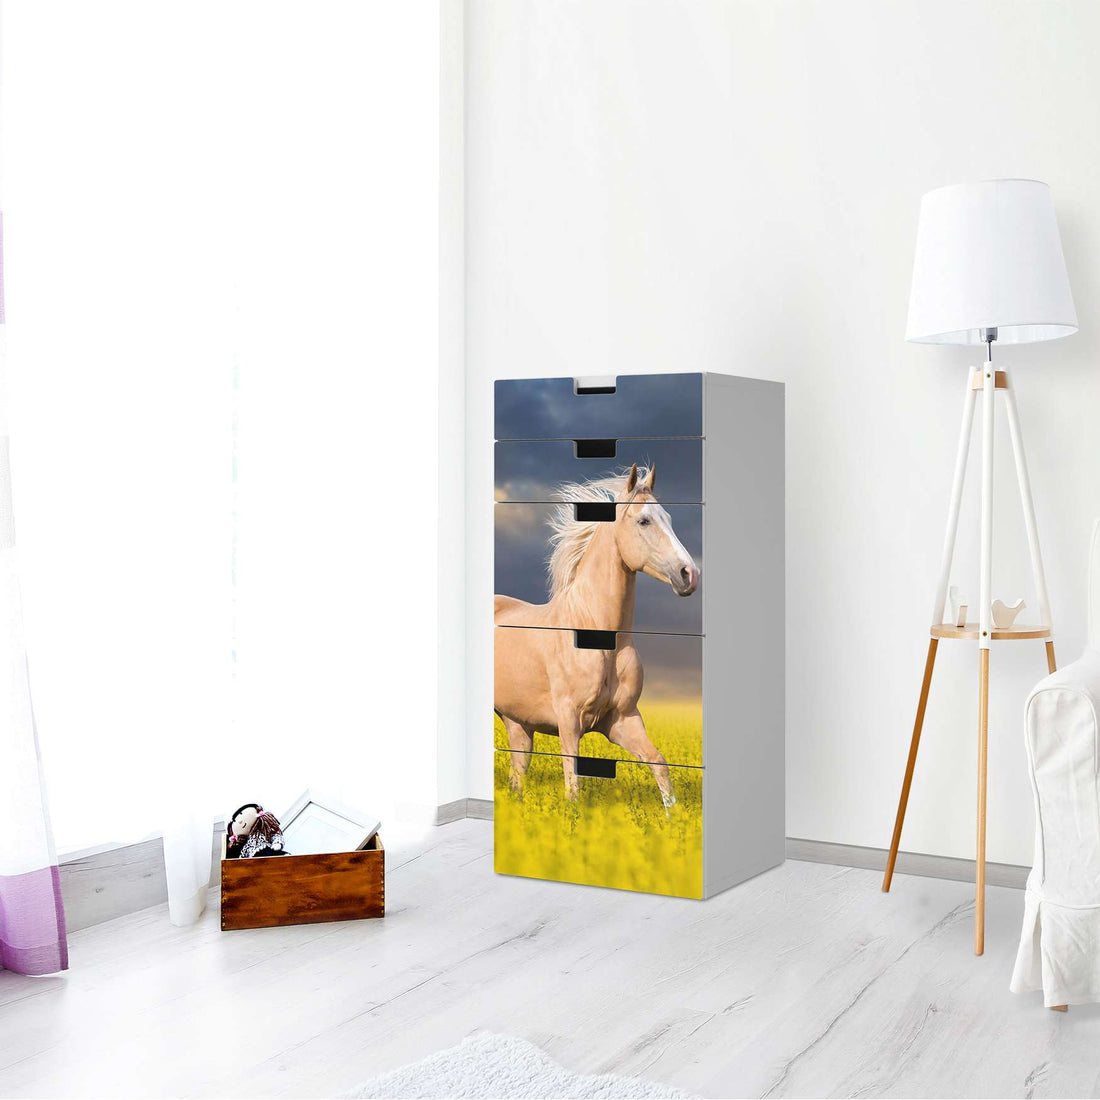 Möbel Klebefolie Wildpferd - IKEA Stuva Kommode - 5 Schubladen - Wohnzimmer